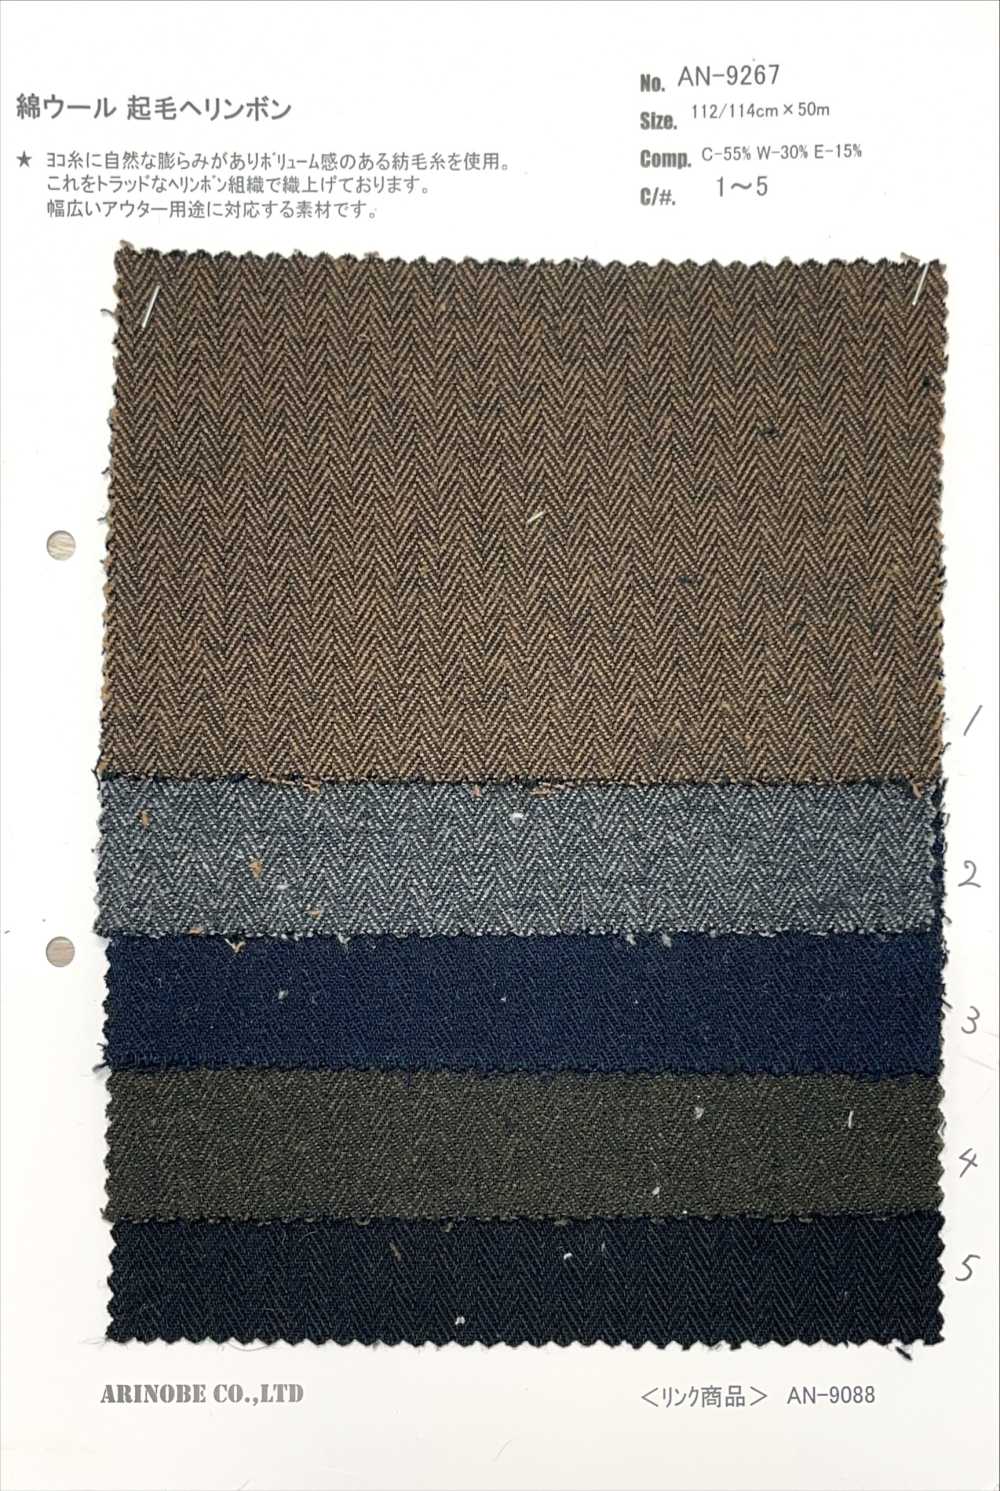 AN-9267 Algodón Lana Fuzzy Espiga[Fabrica Textil] ARINOBE CO., LTD.